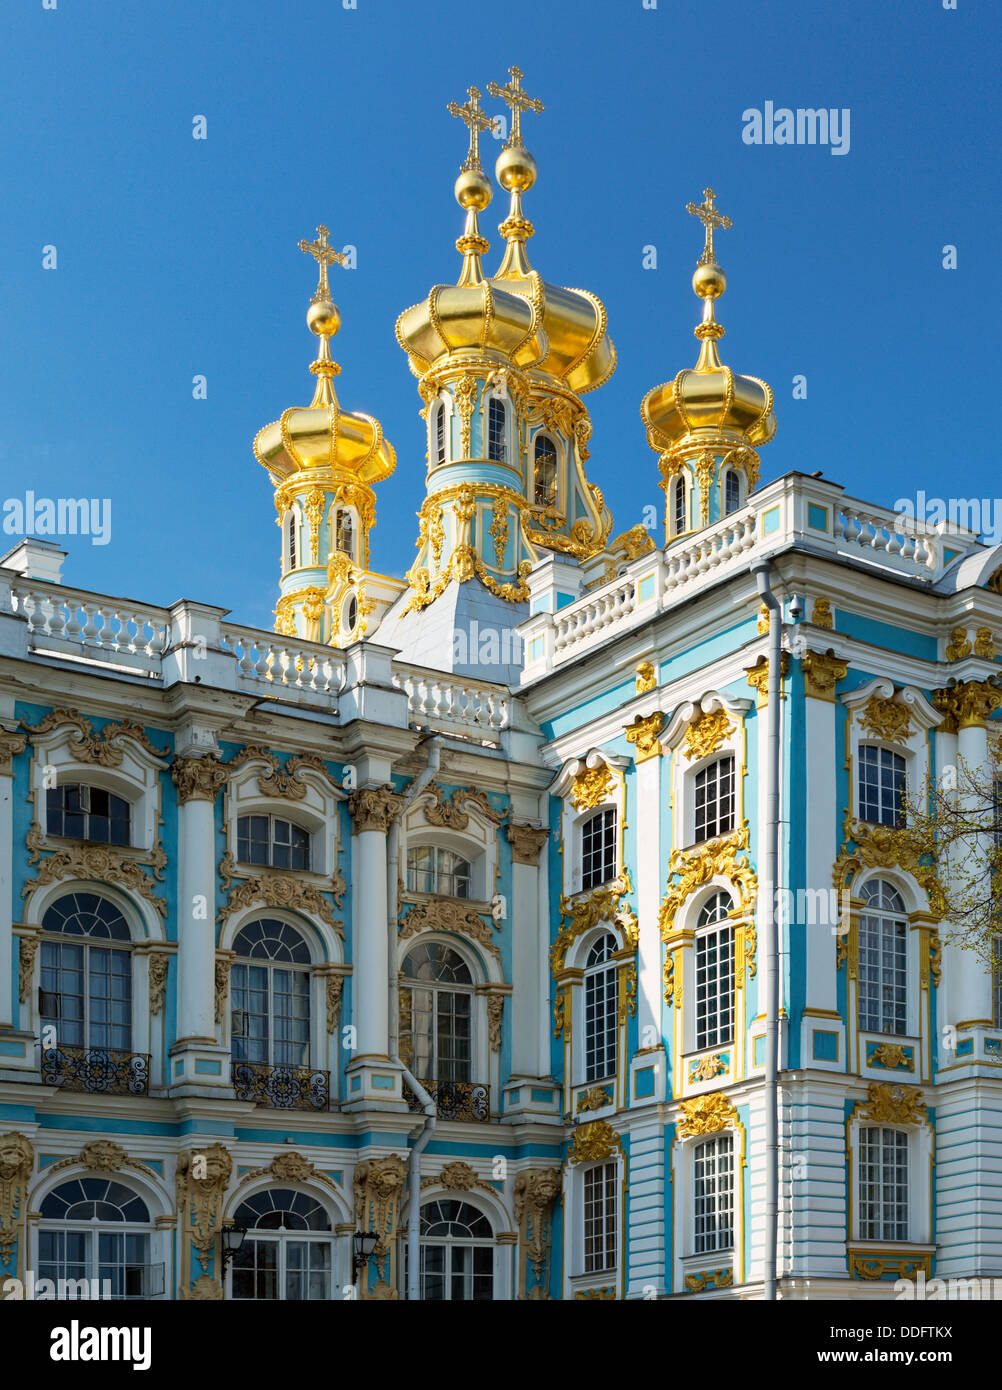 Rusia palacio Catherine edificios de arquitectura de oro San Petersburgo. Viajes lugares estilo barroco lugar famoso blue mansion chur Foto de stock